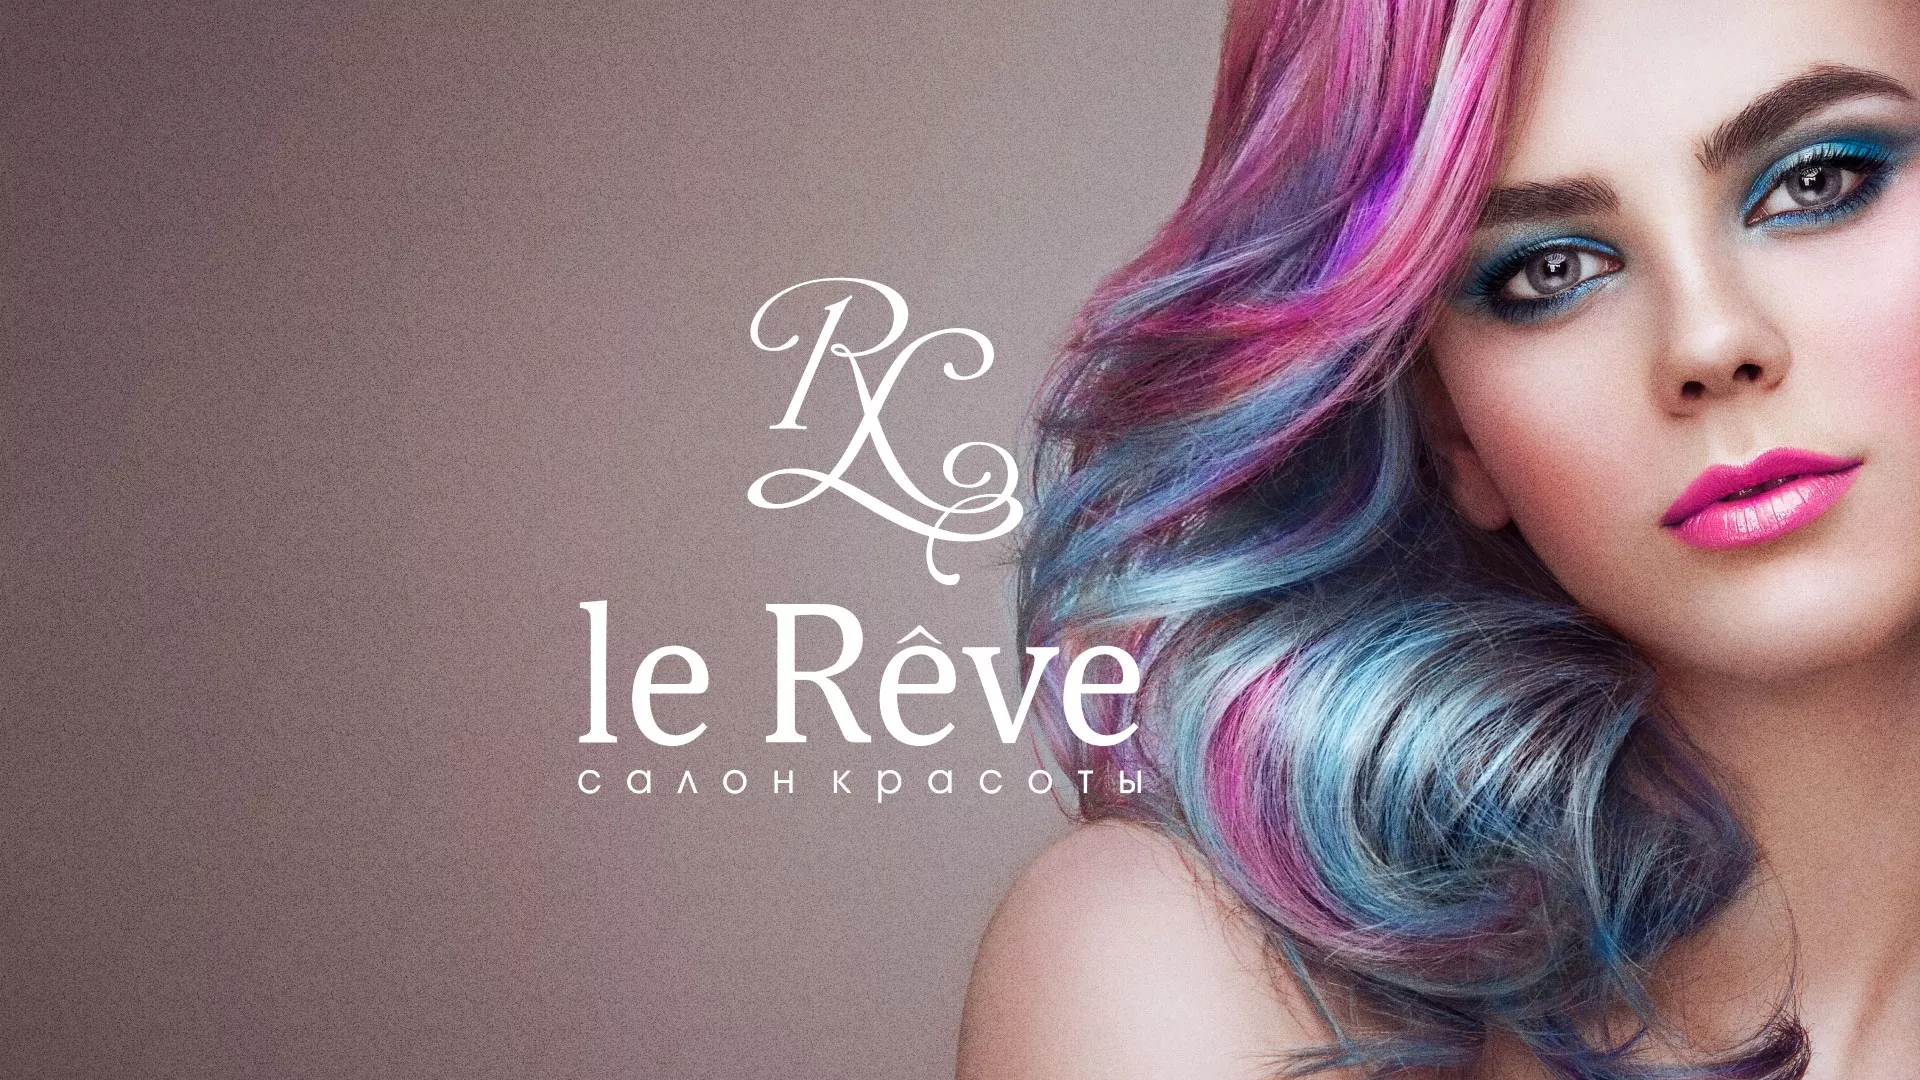 Создание сайта для салона красоты «Le Reve» в Воронеже